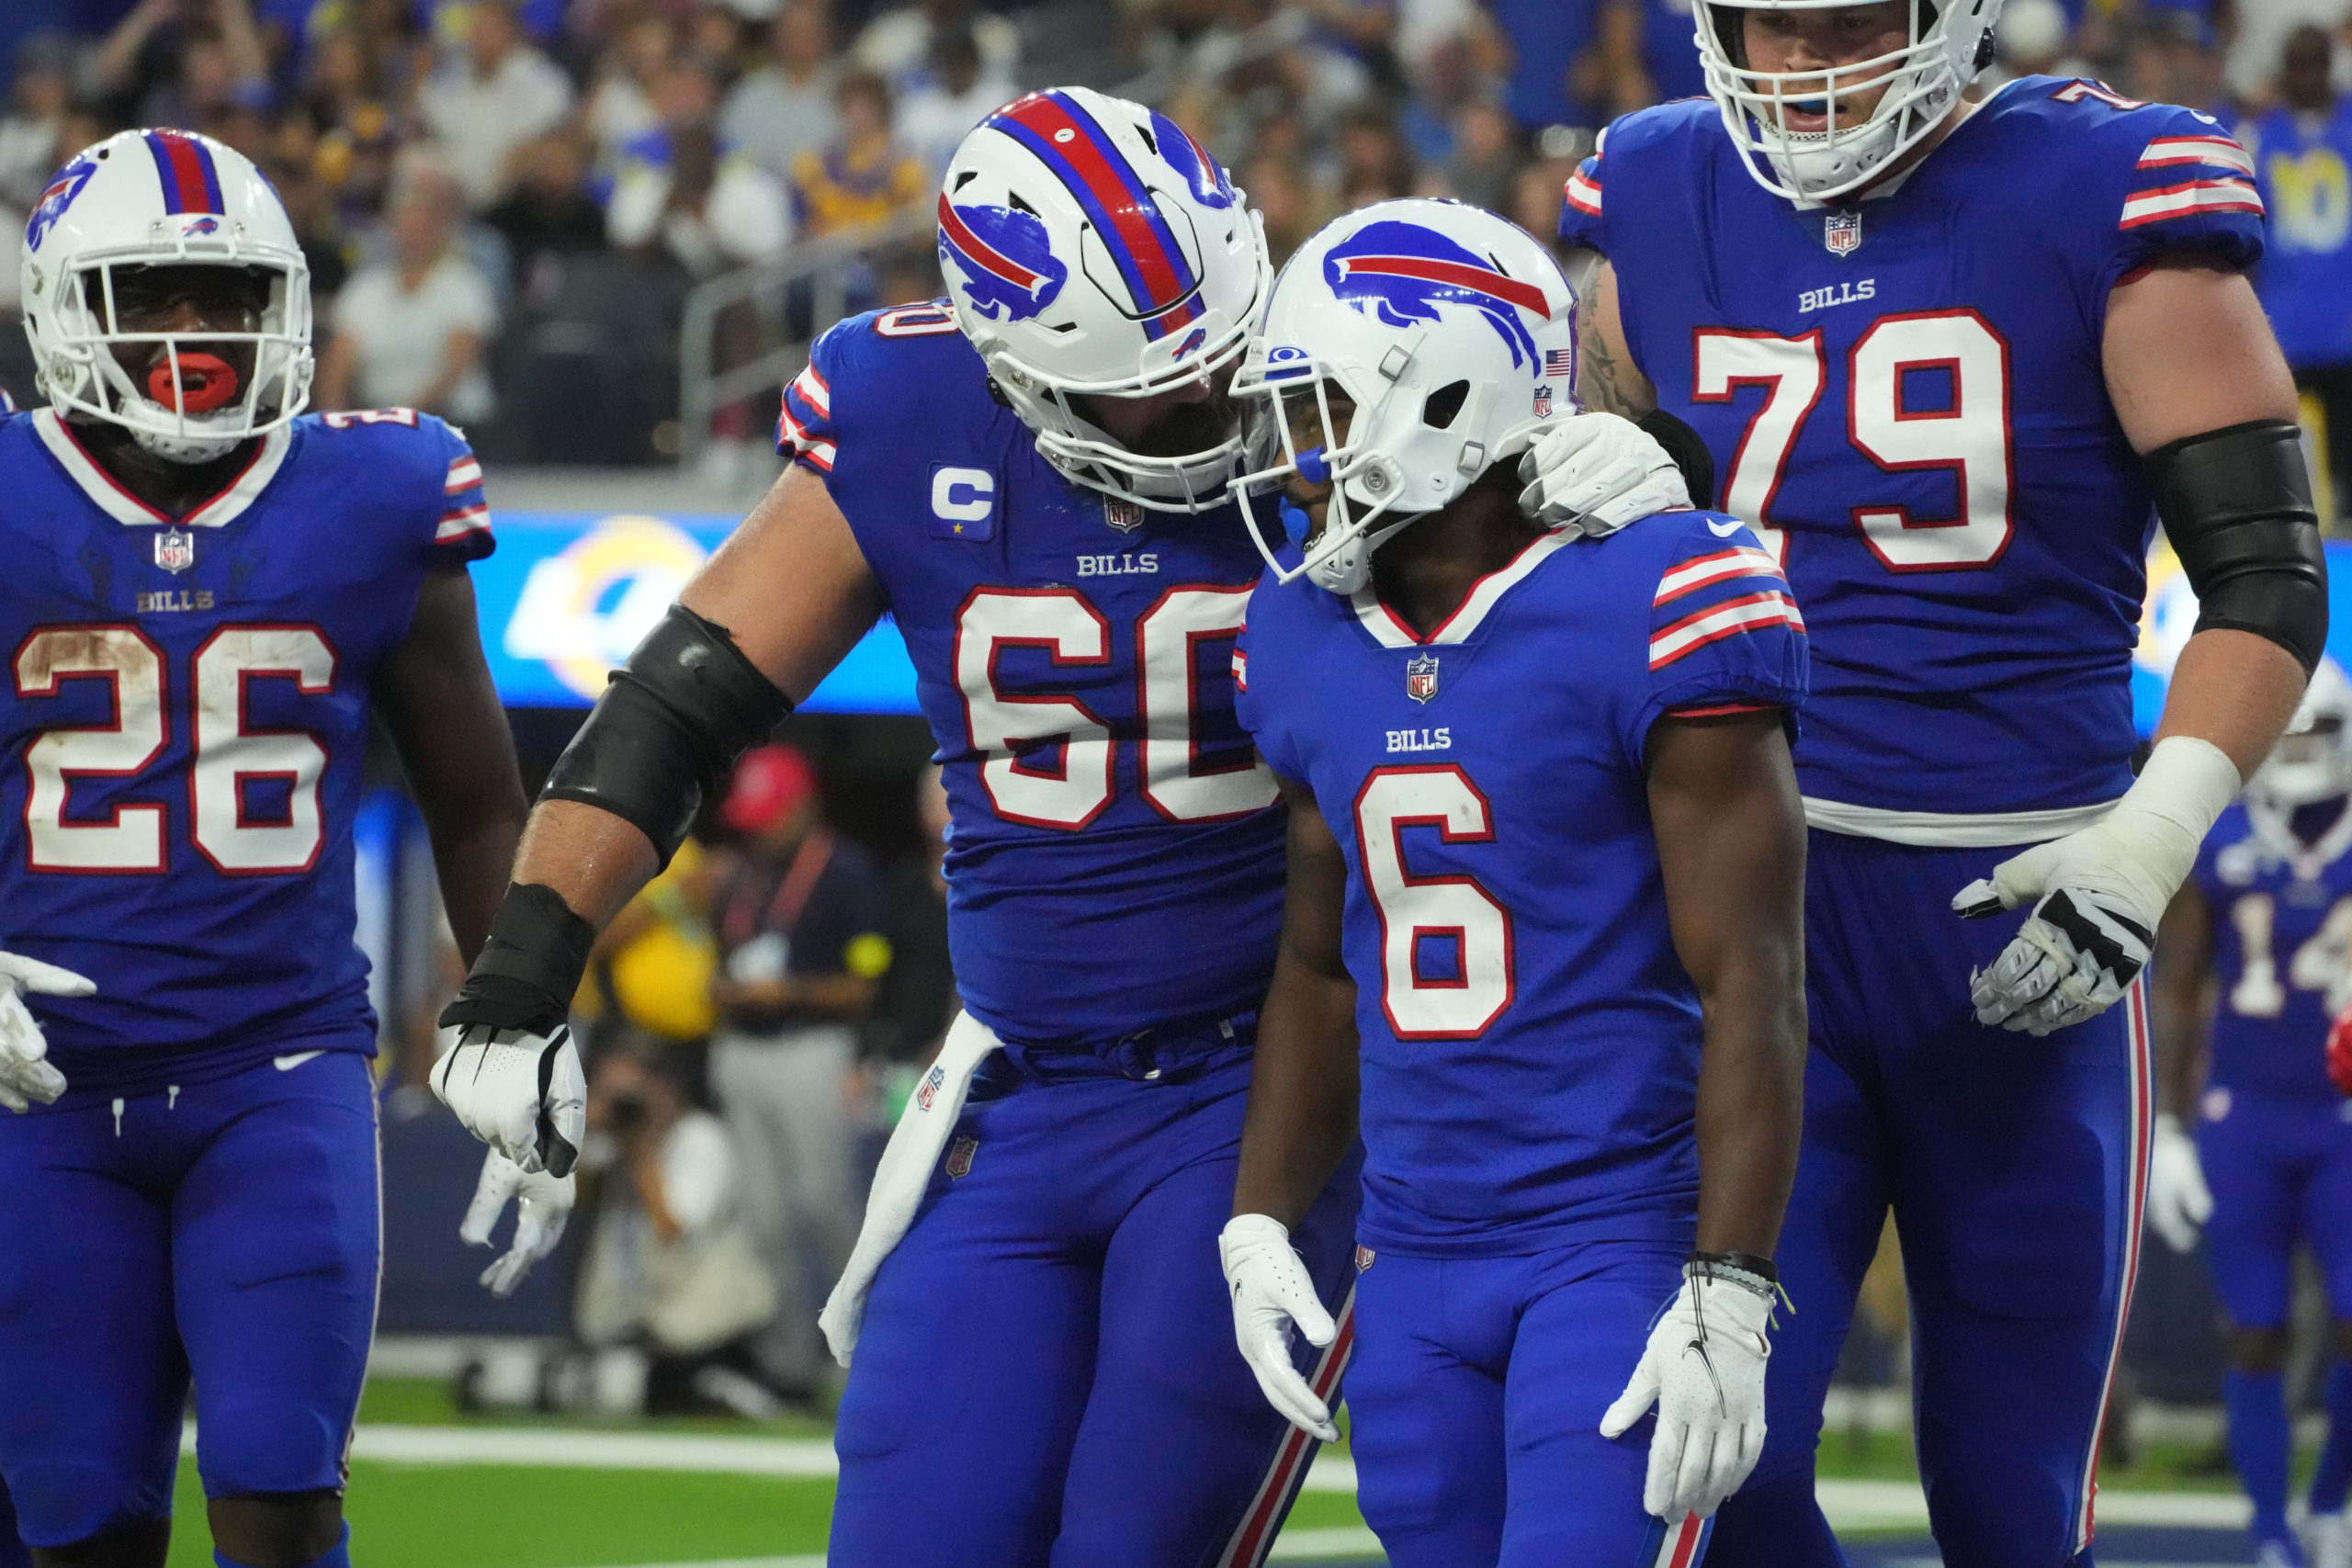 Bills Look Like Super Bowl Contenders Heading into Week 2